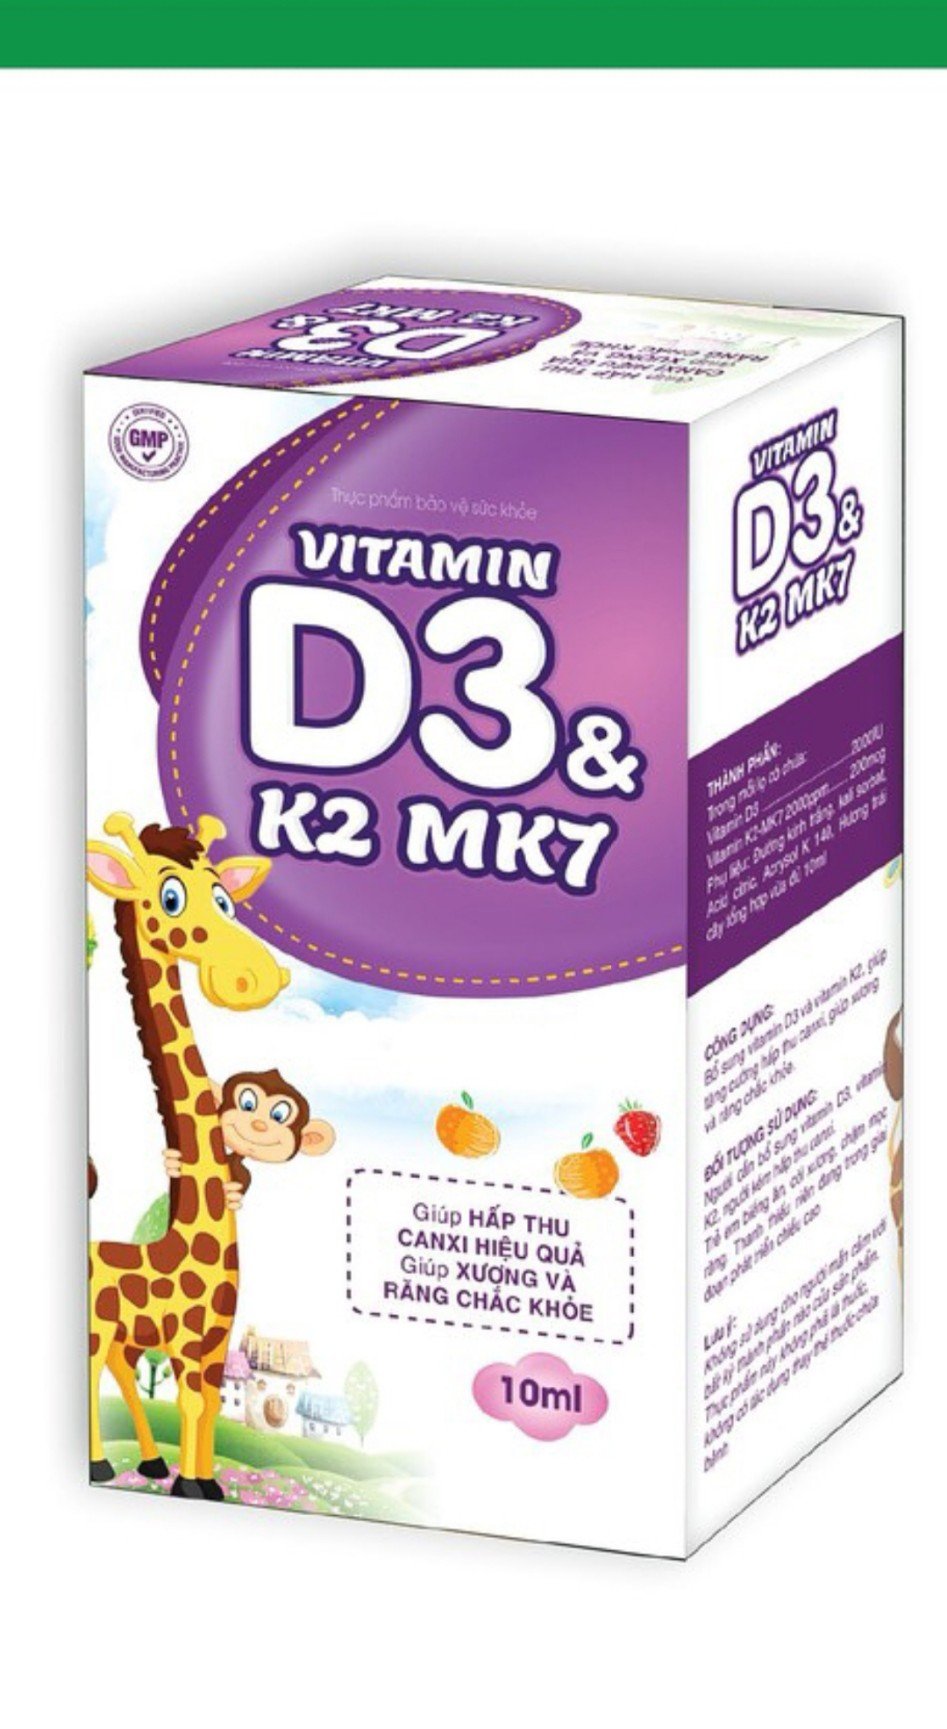 Vitamin D3 K2 Mk7 nhỏ giot giúp bé hấp thụ calci tăng trưởng chiều cao cân nặng tăng sức đề kháng hộp 10ml - Vitamin D3 K2 Mk7 nhỏ giot -